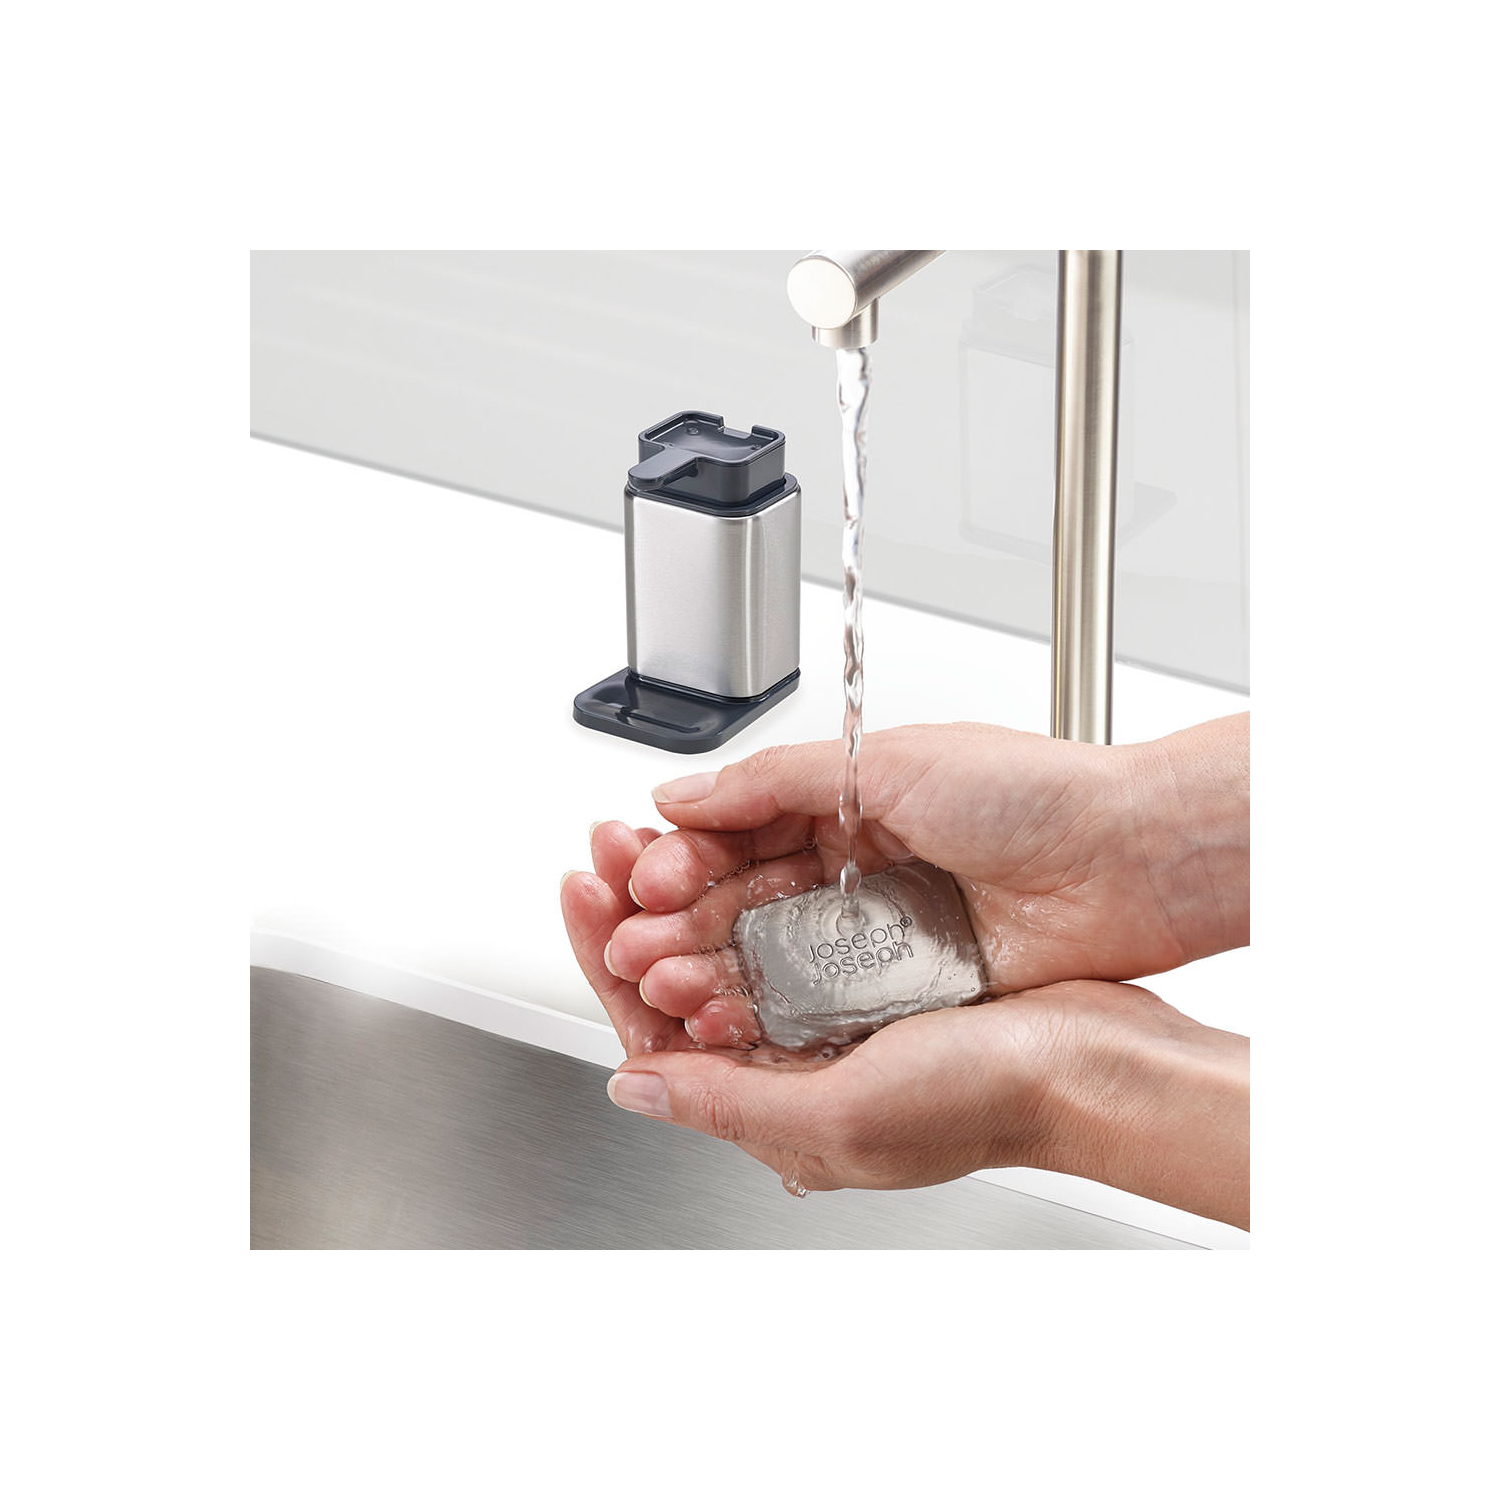 Surface™ Soap Pump